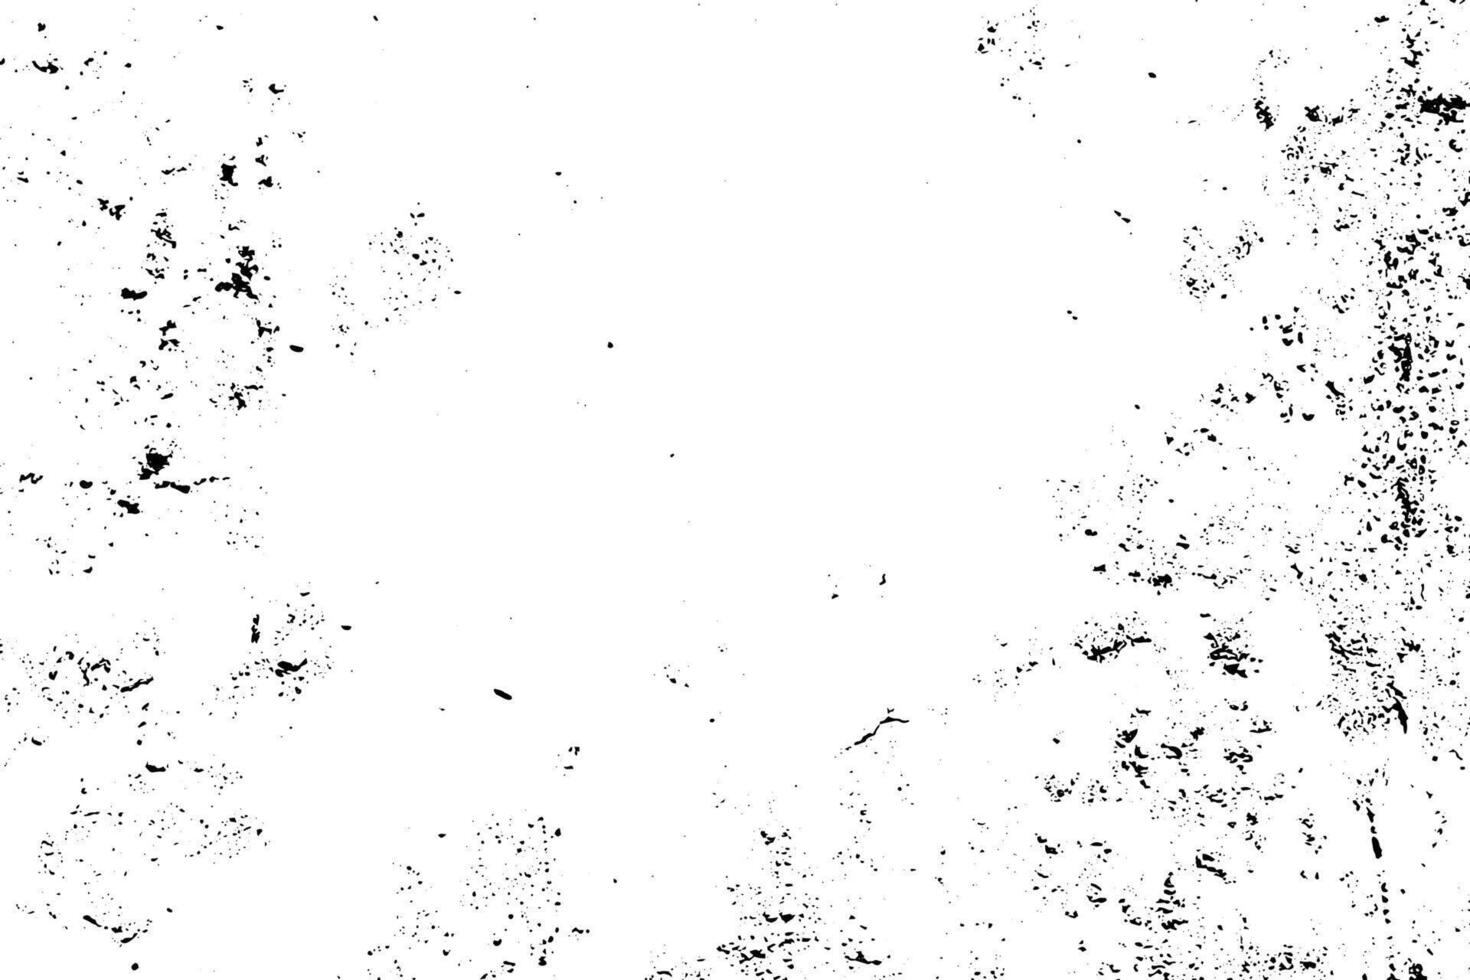 grunge fundo do Preto e branco. abstrato monocromático vintage superfície do rachaduras, arranhões, salgadinhos, pó. vetor